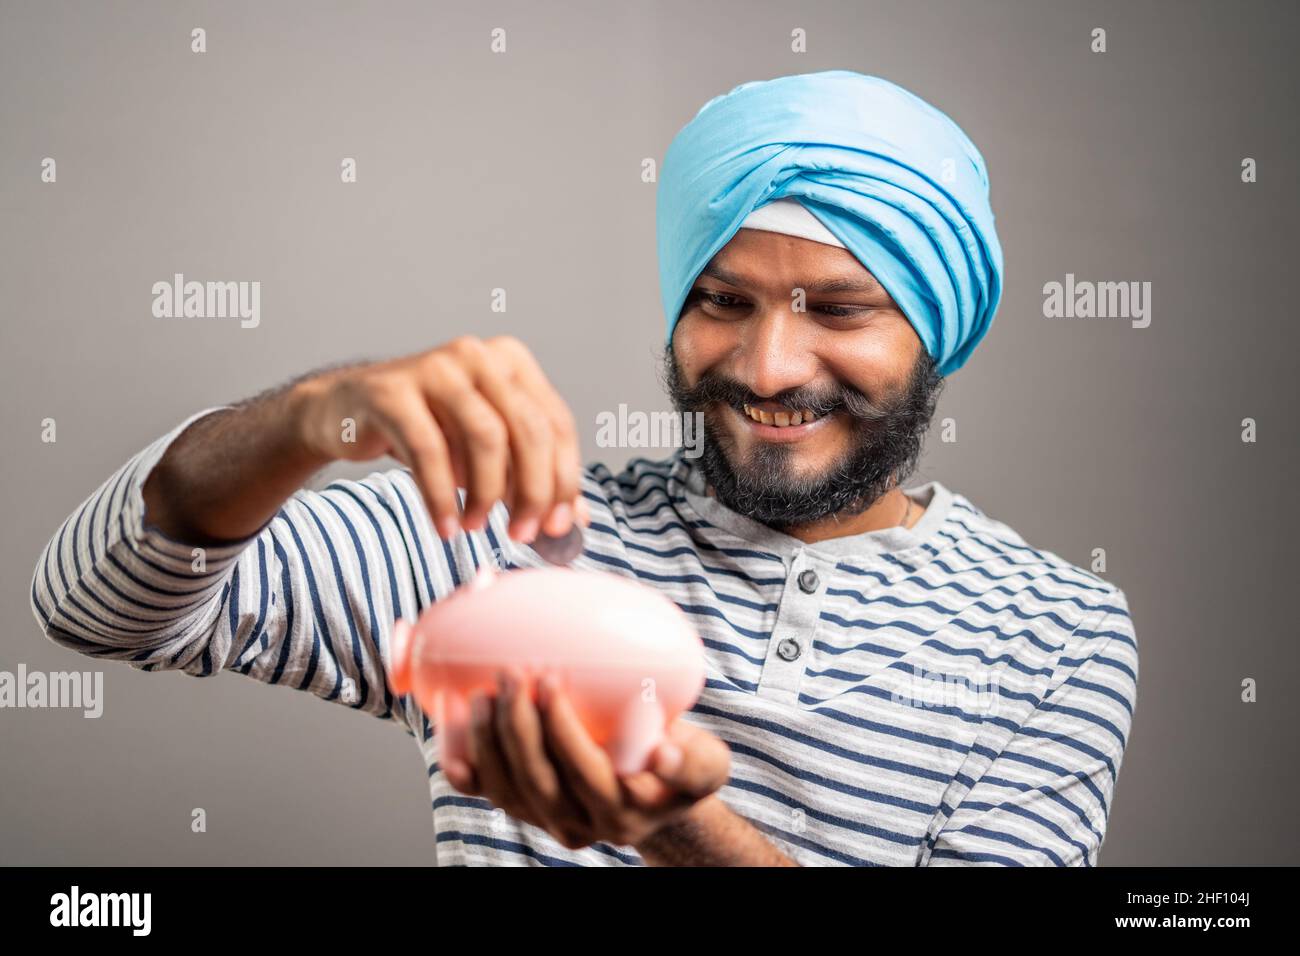 Junger indischer sikh-Mann spart Geld, indem er auf dem Sparschwein auf grauem Hintergrund eine Münze legt - Konzept des Sparens und der zukünftigen Finanzplanung und -Investition. Stockfoto